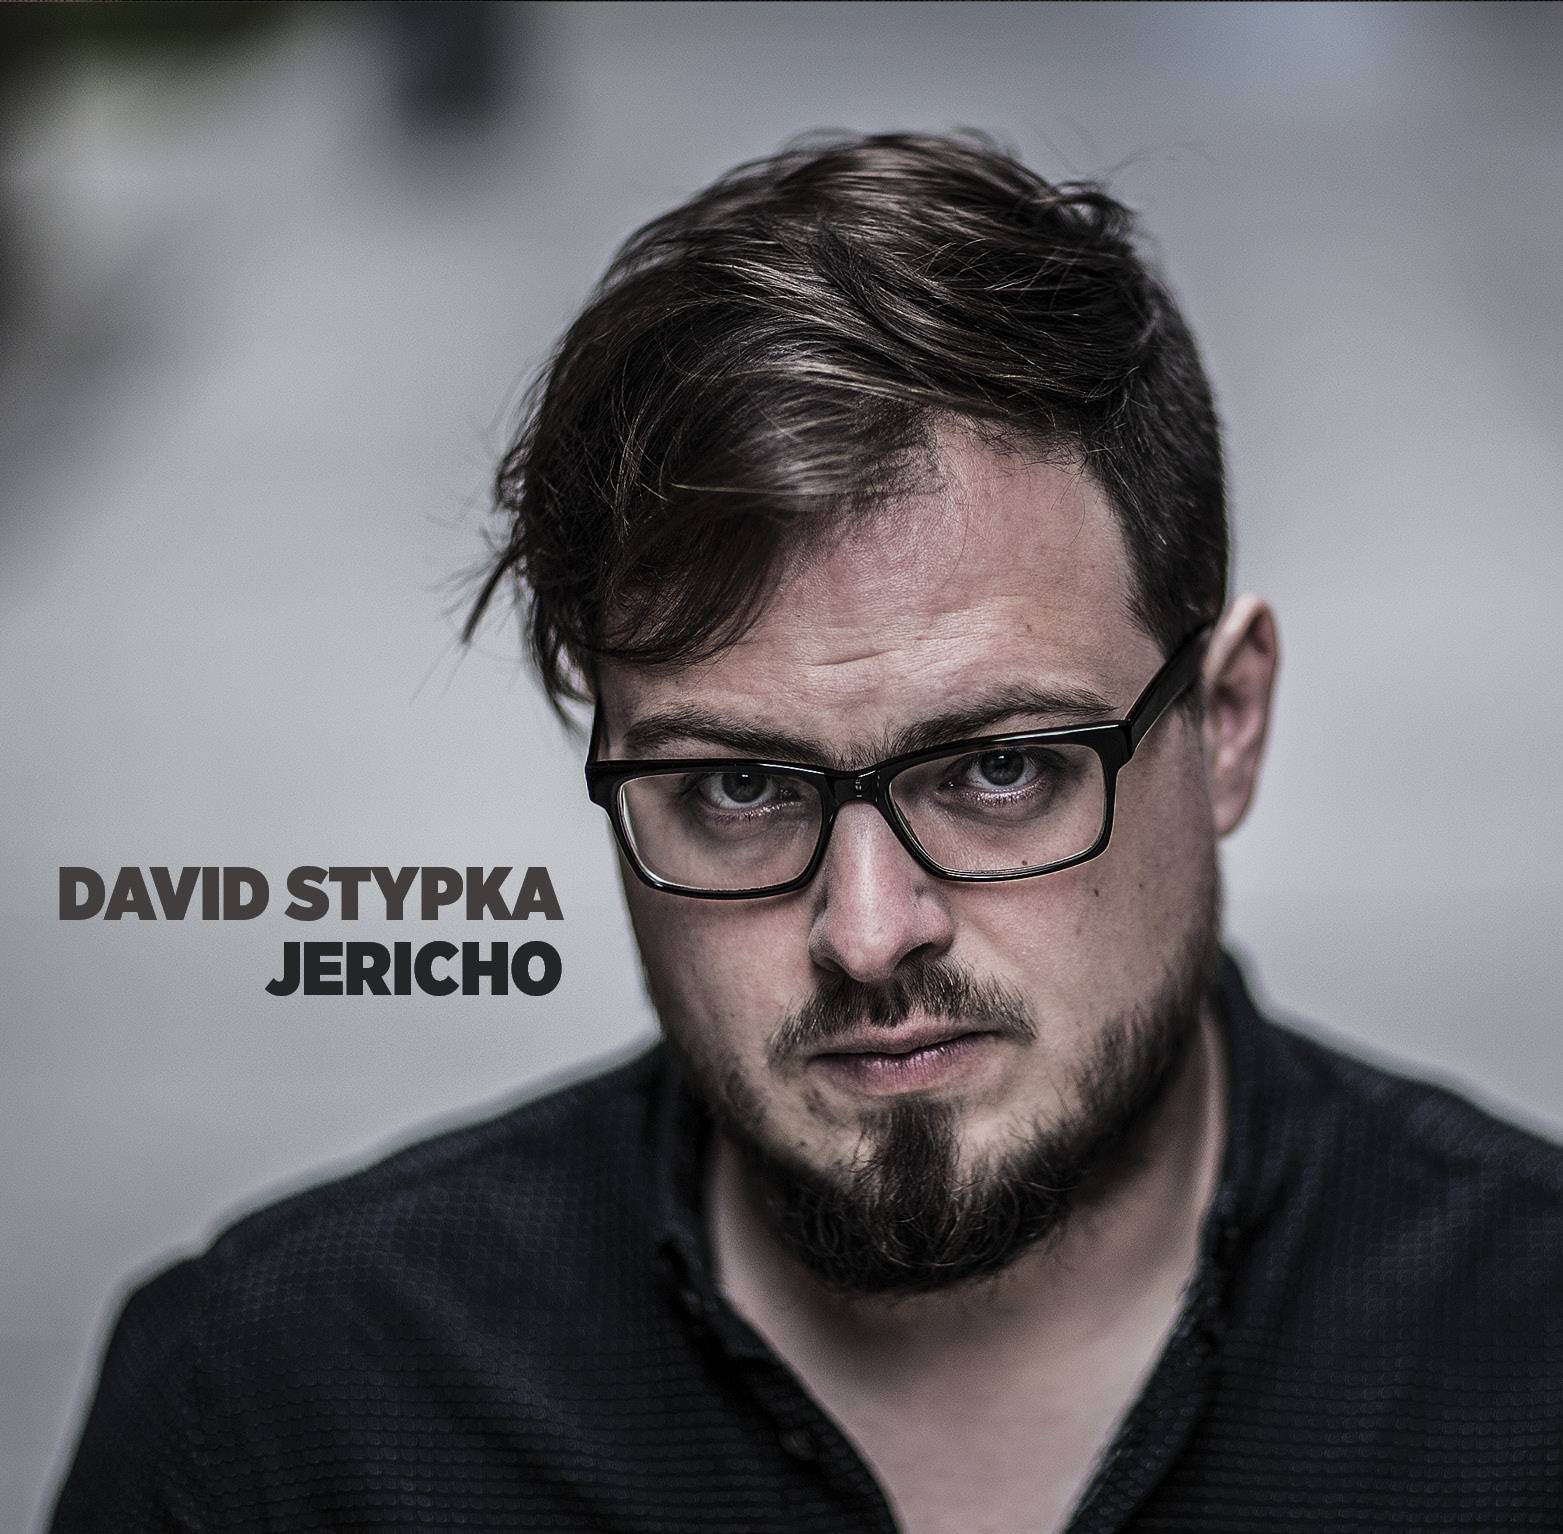 RECENZE: David Stypka není žádná rychlokvaška. Na EP Jericho zpívá autenticky a vyzrále